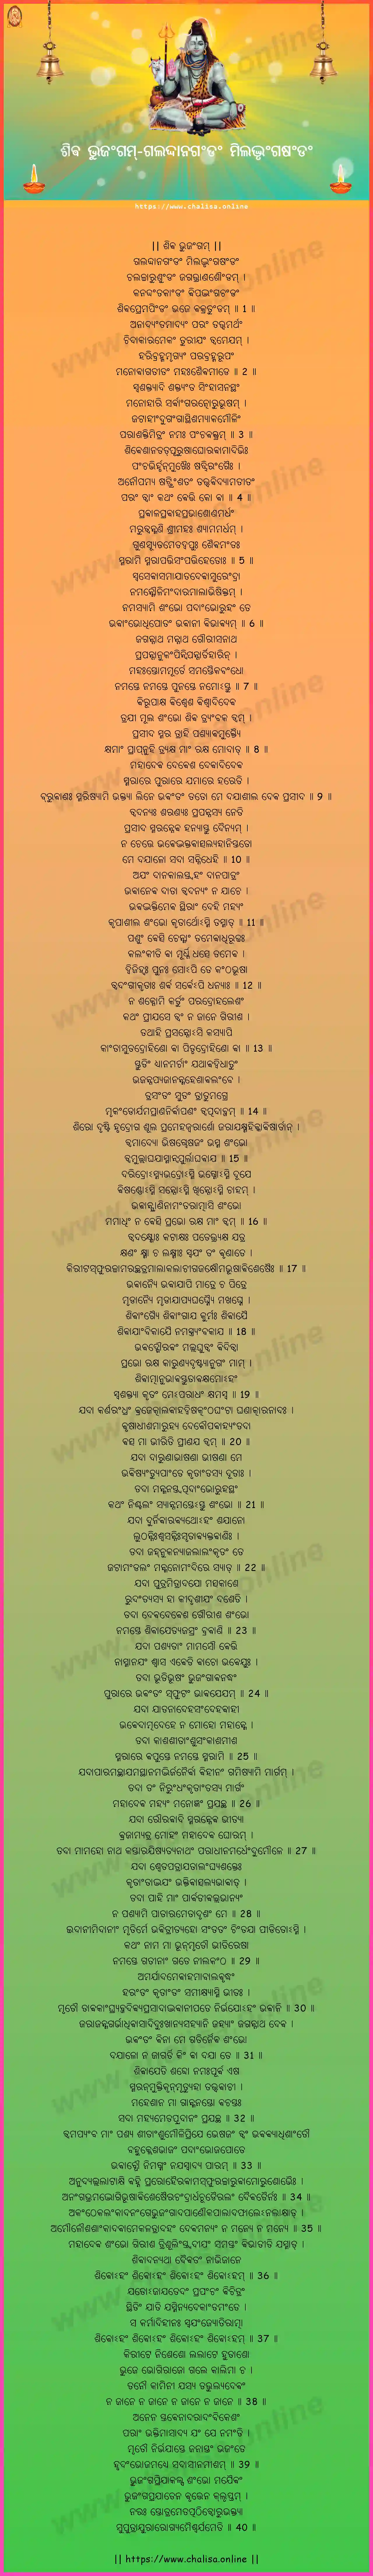 galaddanagandam-shiva-bhujangam-oriya-oriya-lyrics-download